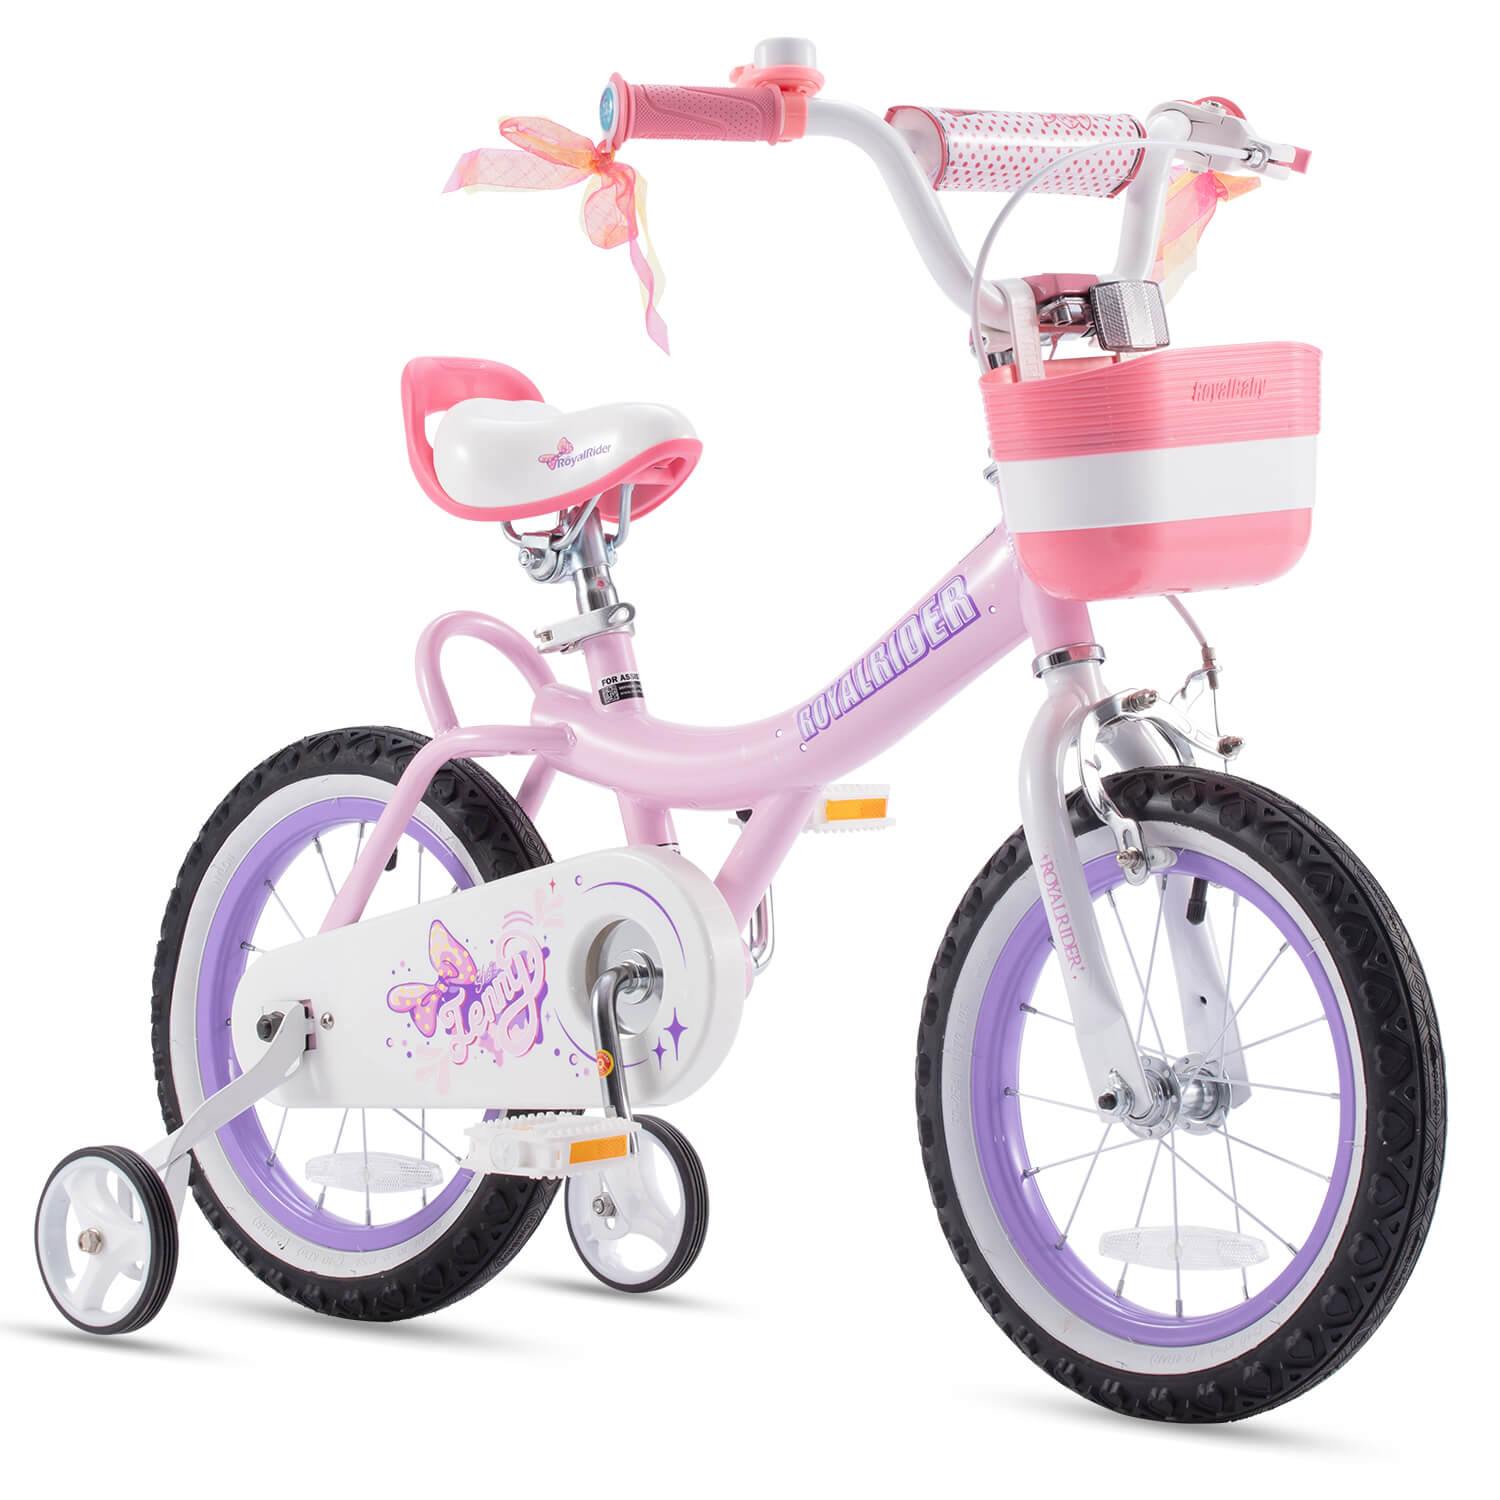 RoyalBaby kids bike girls bike jenny 